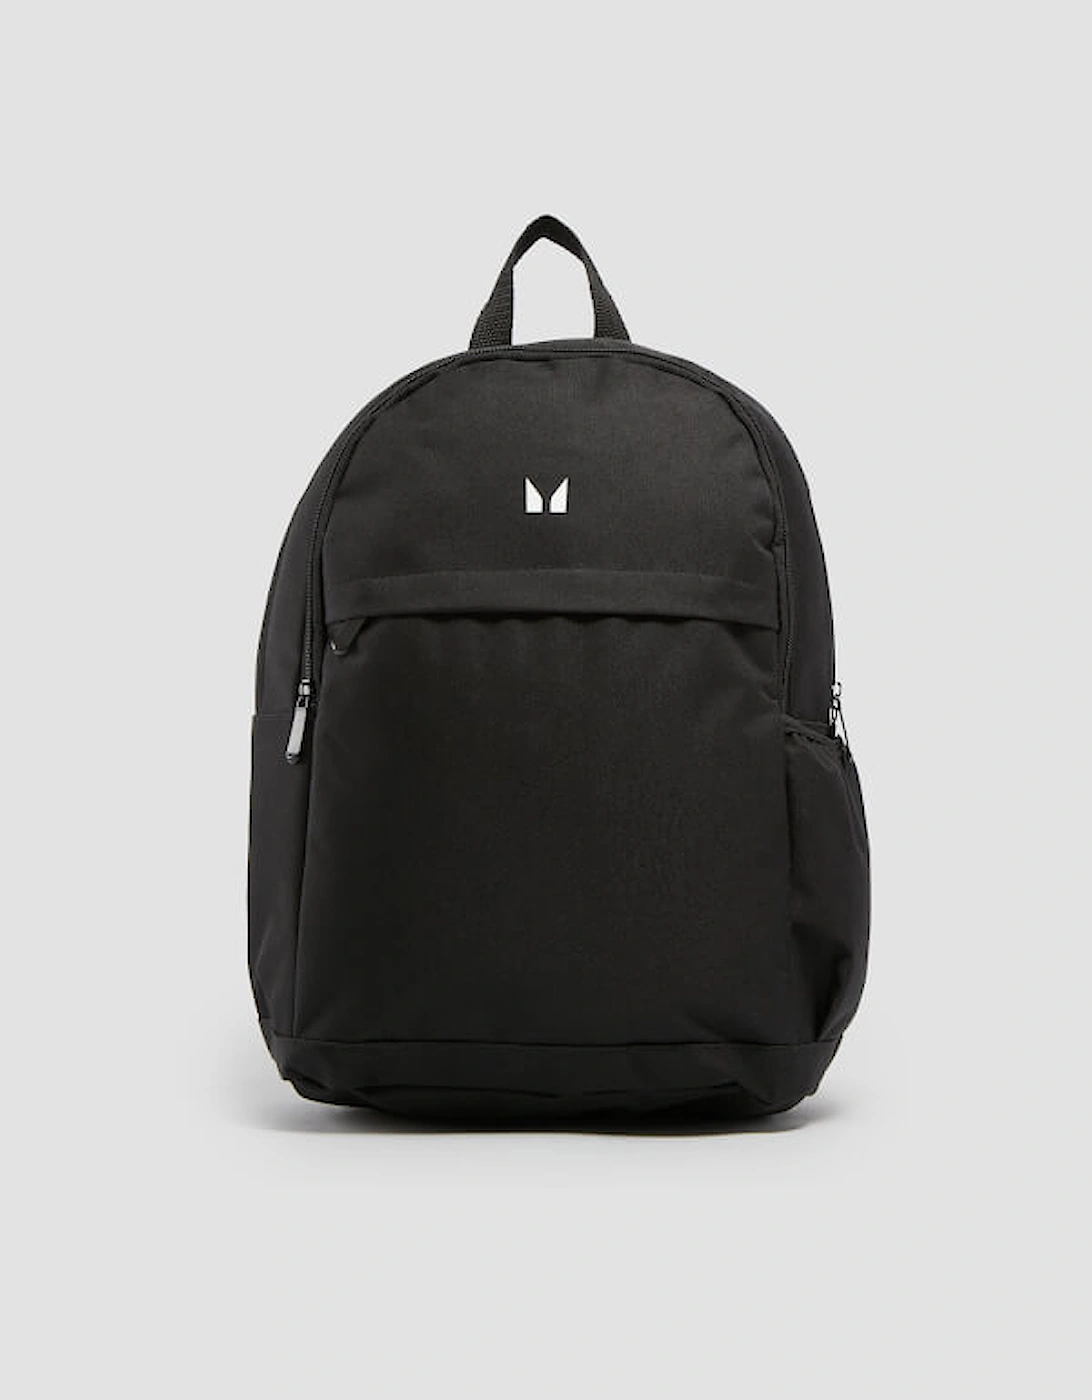 Backpack - Black, 2 of 1